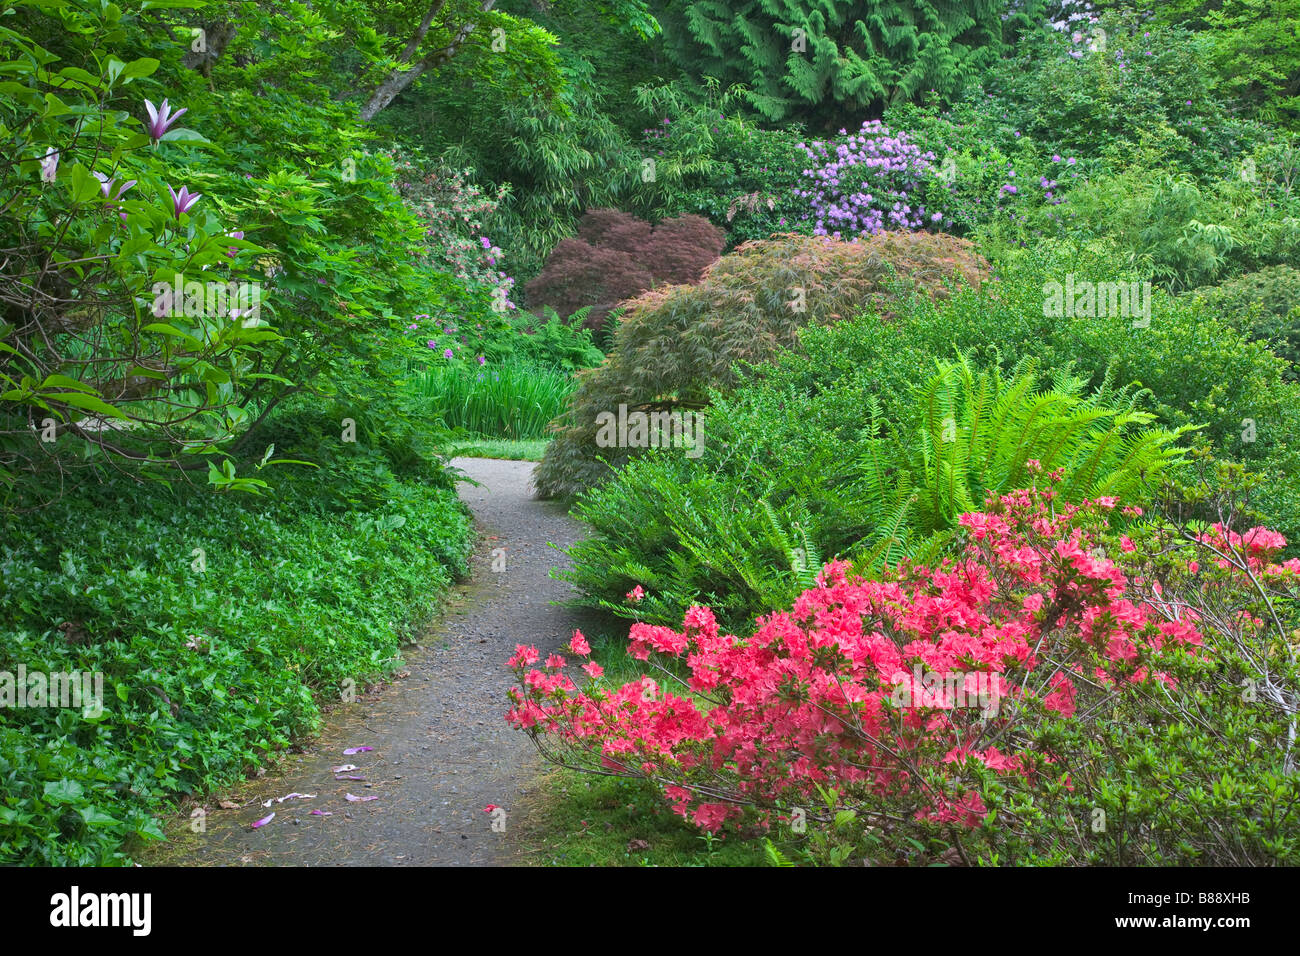 Seattle WA Kubota Garten Stadt Park Schichten von blühenden Sträuchern Farne und Bäume entlang einem Pfad im japanischen Garten Stockfoto